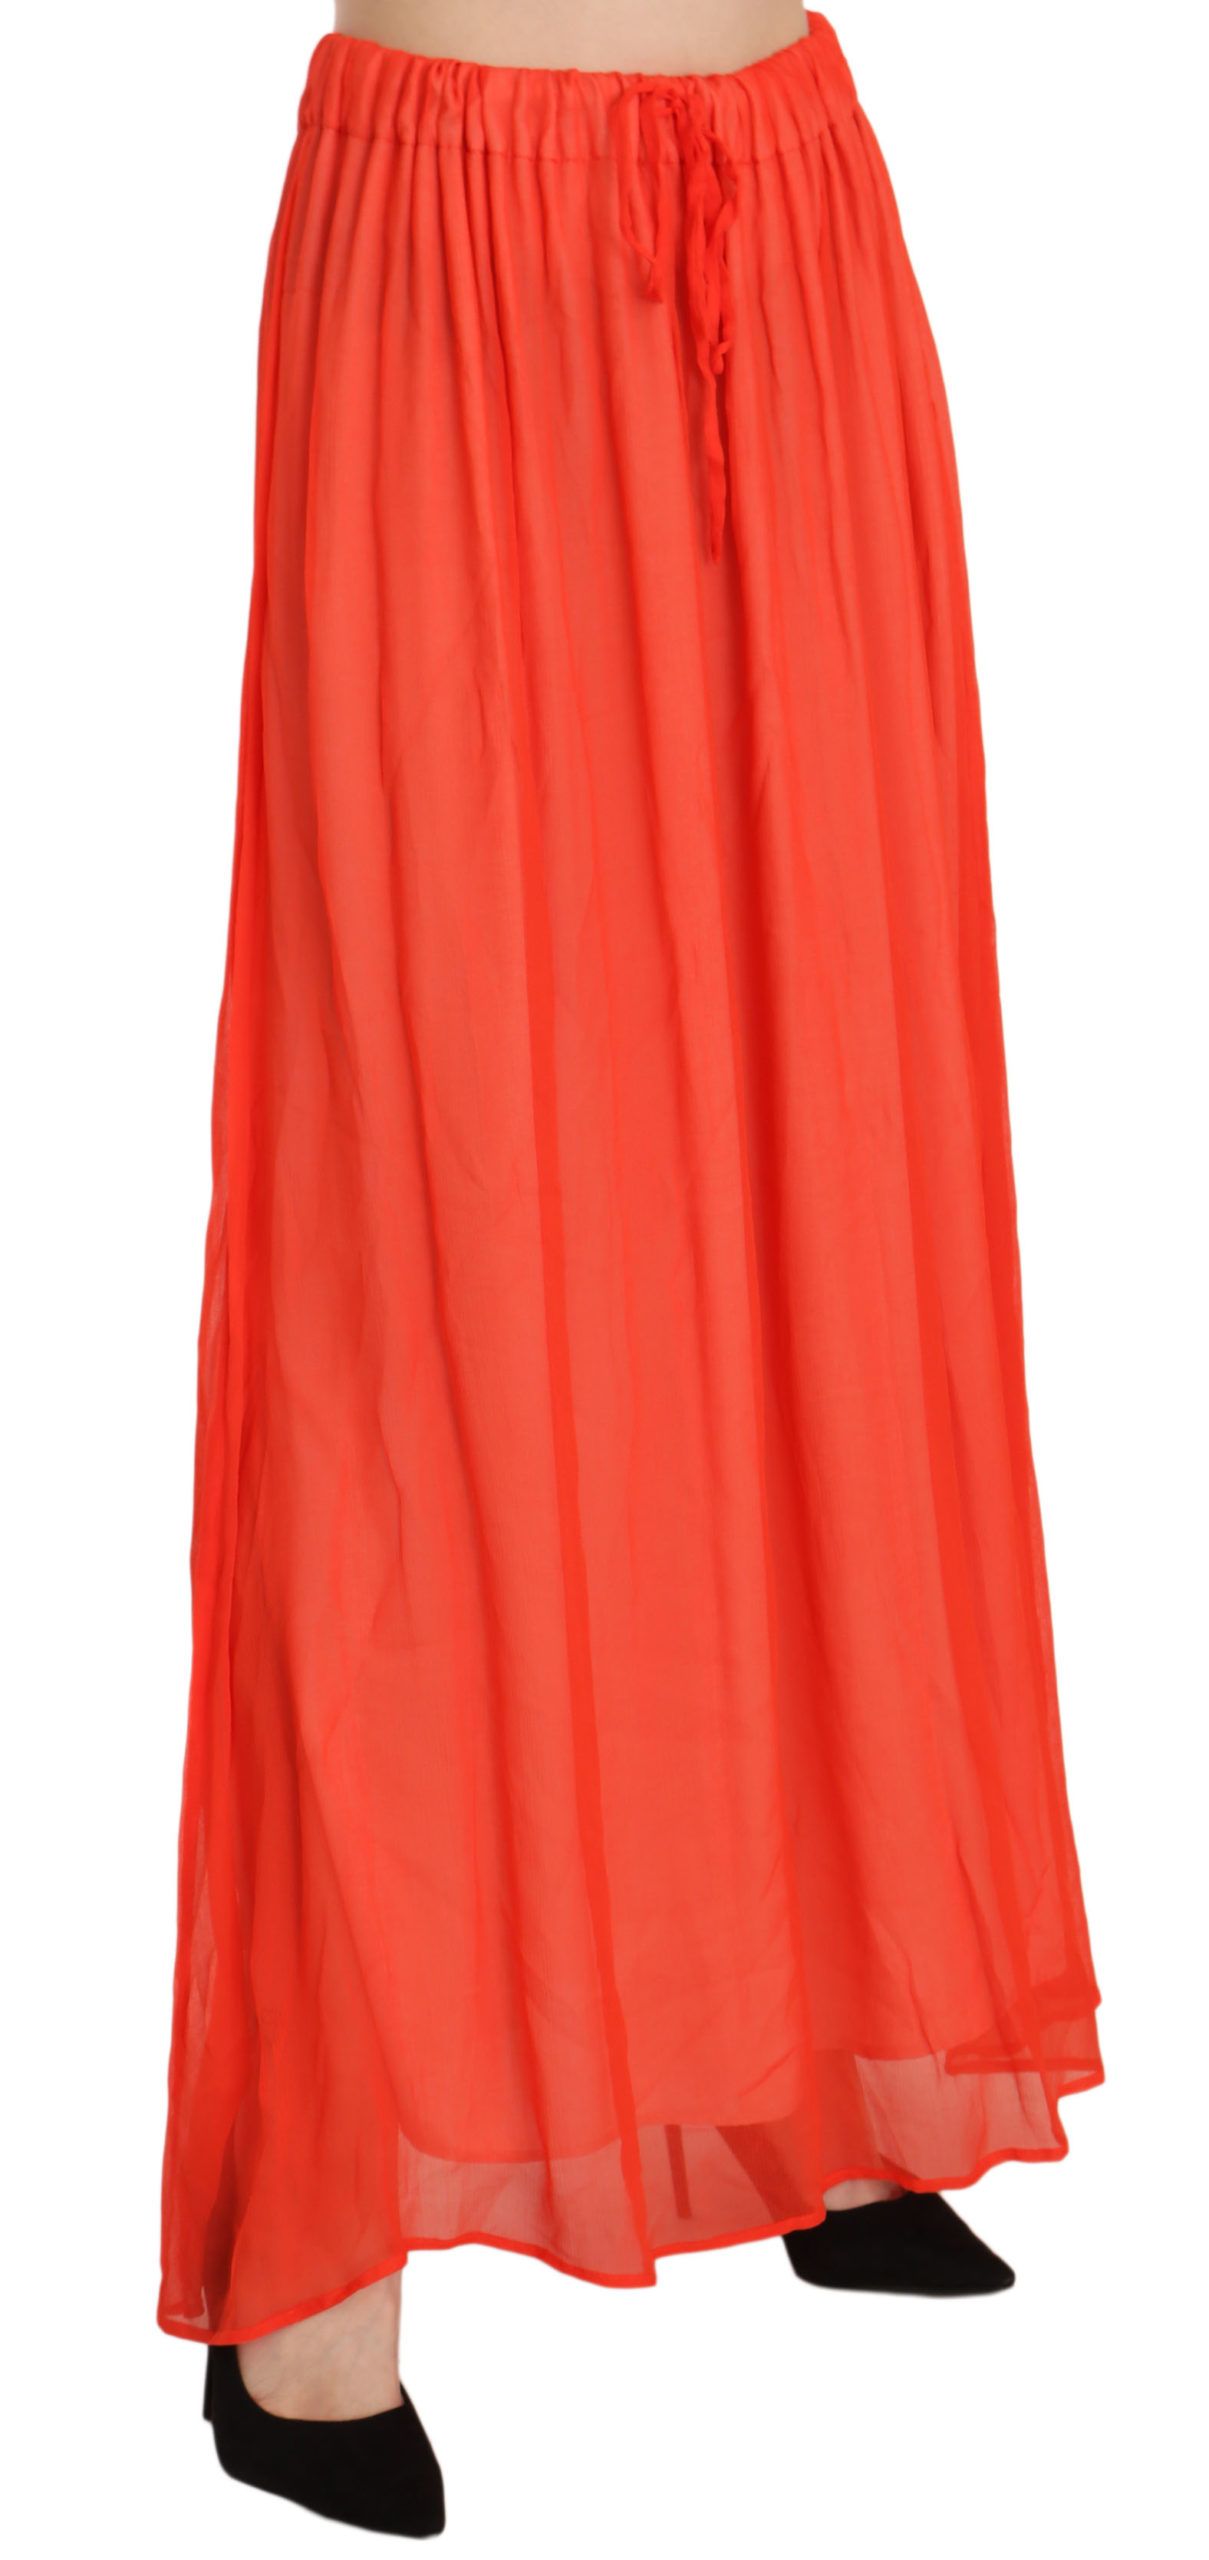 Elegant Orange Pleated Maxi Skirt